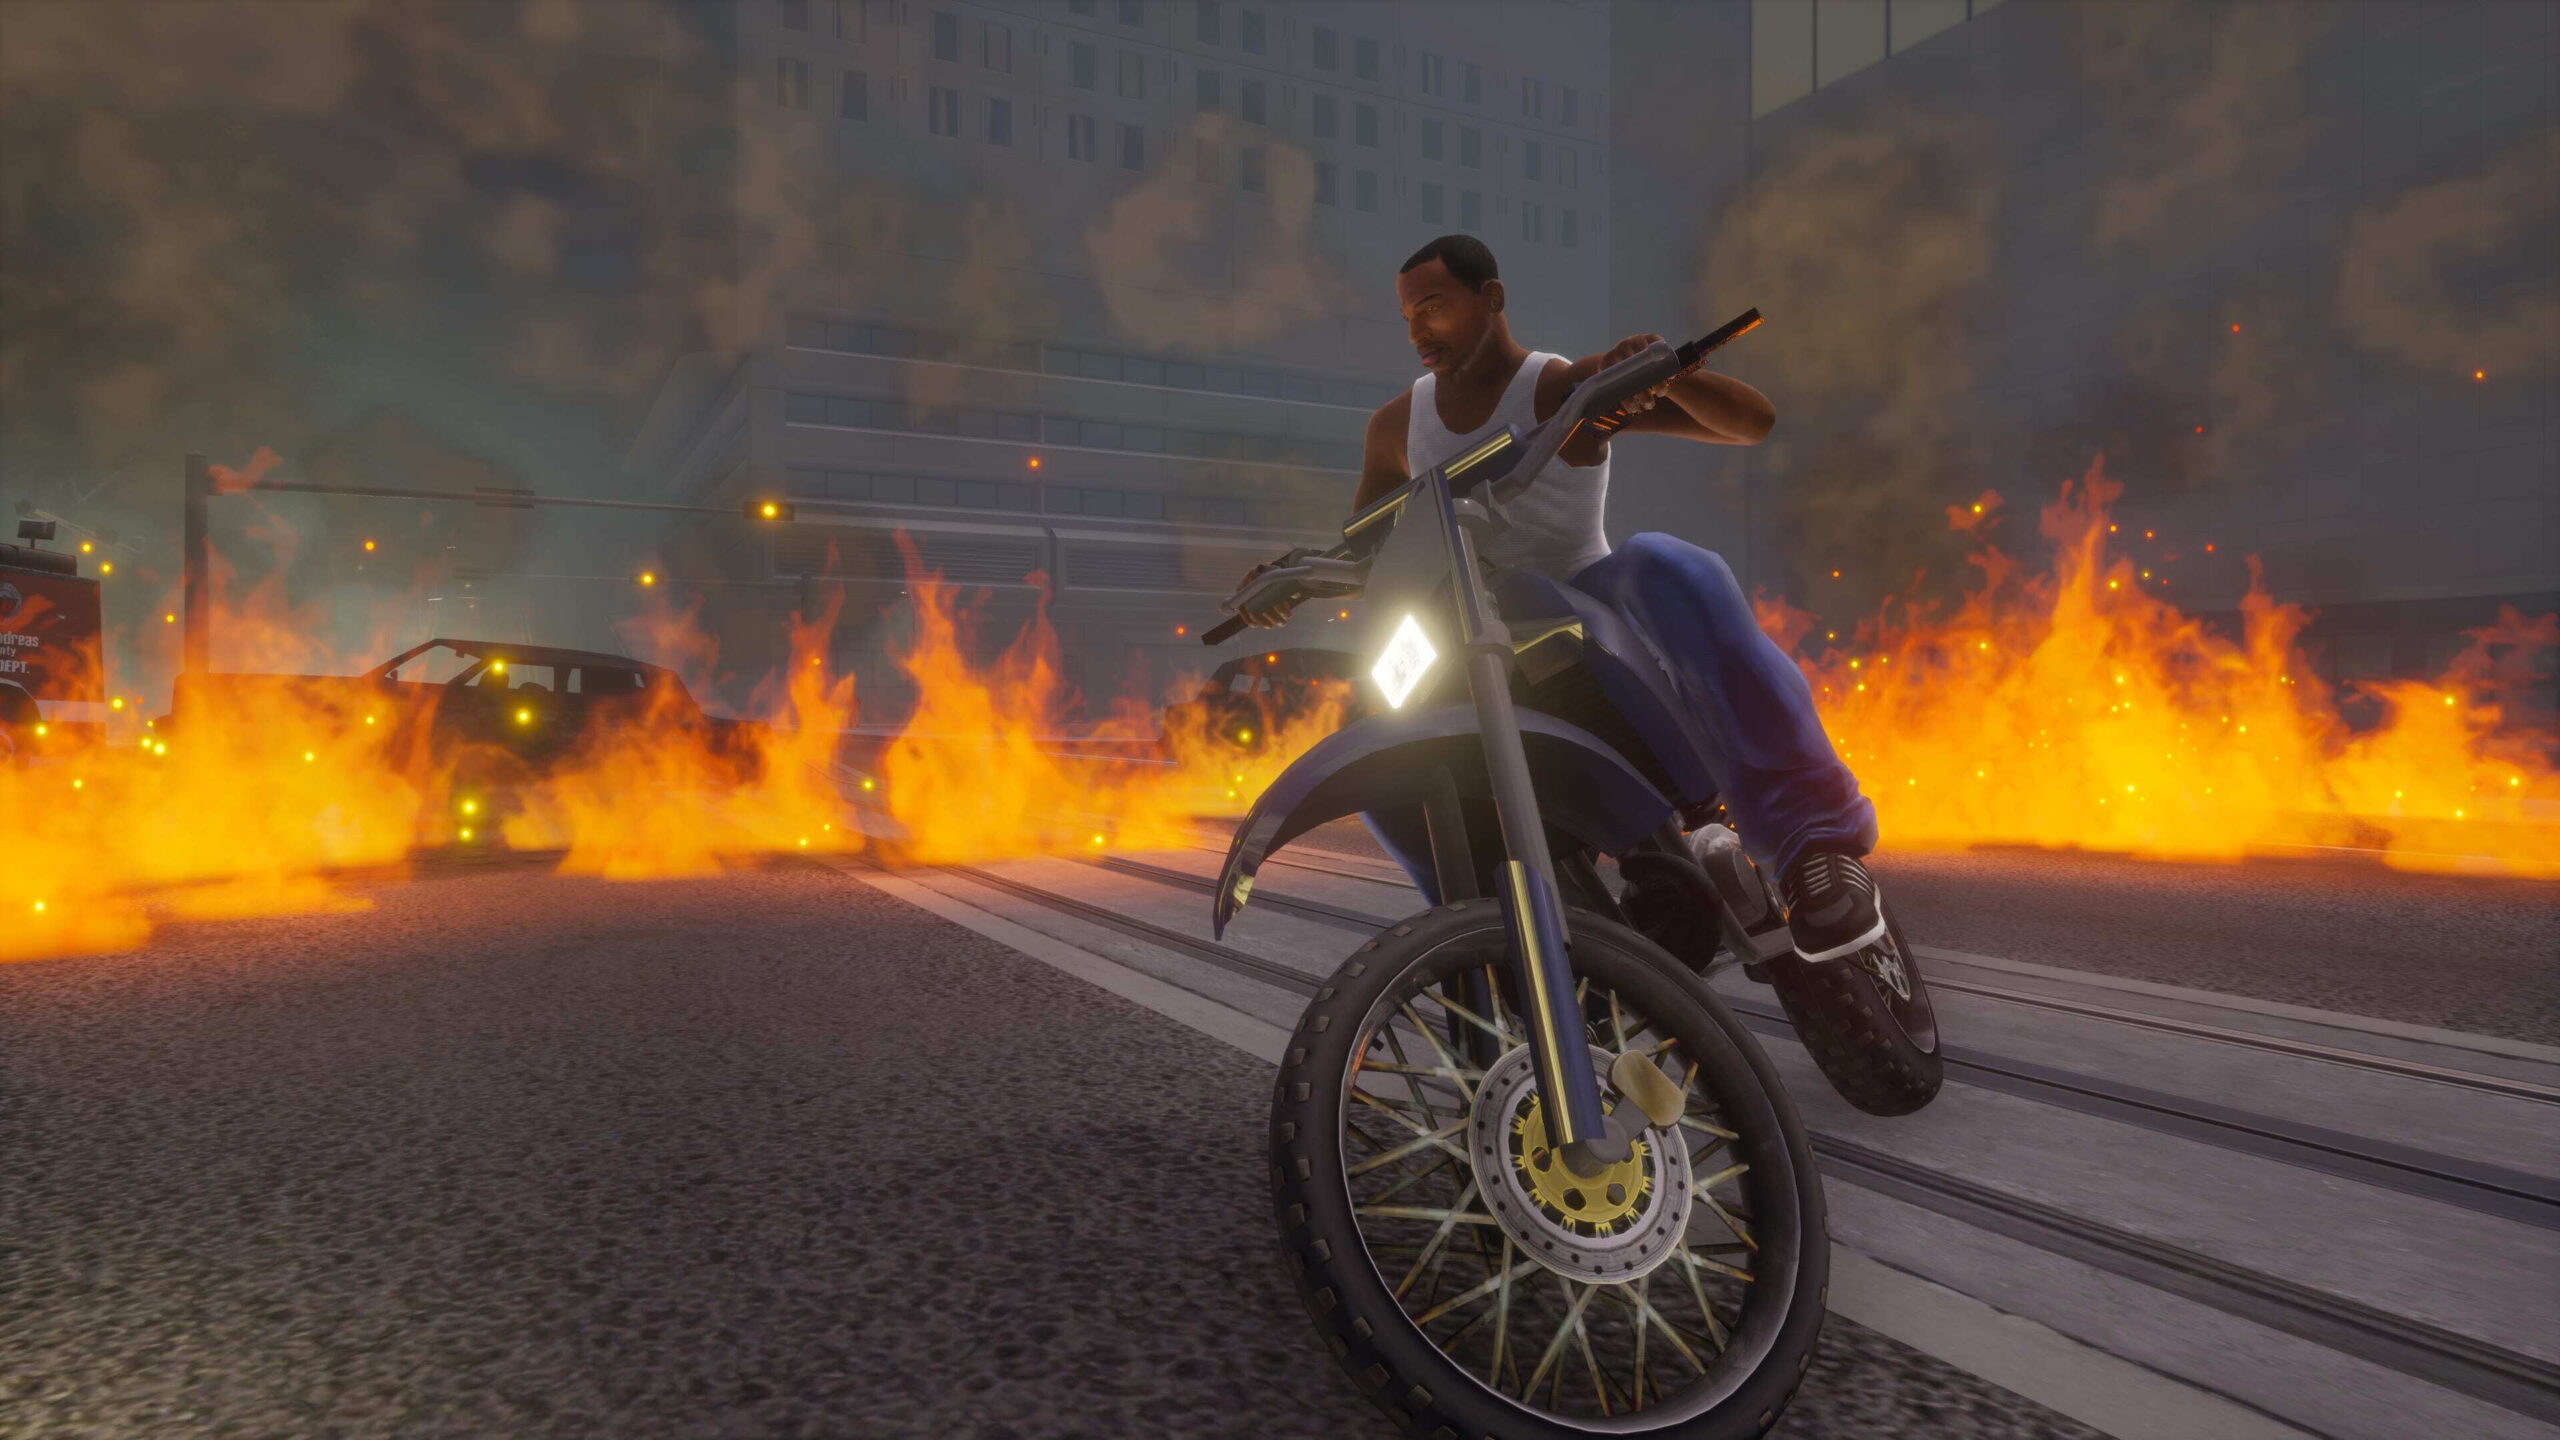 Детальное сравнение освещения, теней, графики и прочего в Grand Theft Auto: The Trilogy с оригиналами